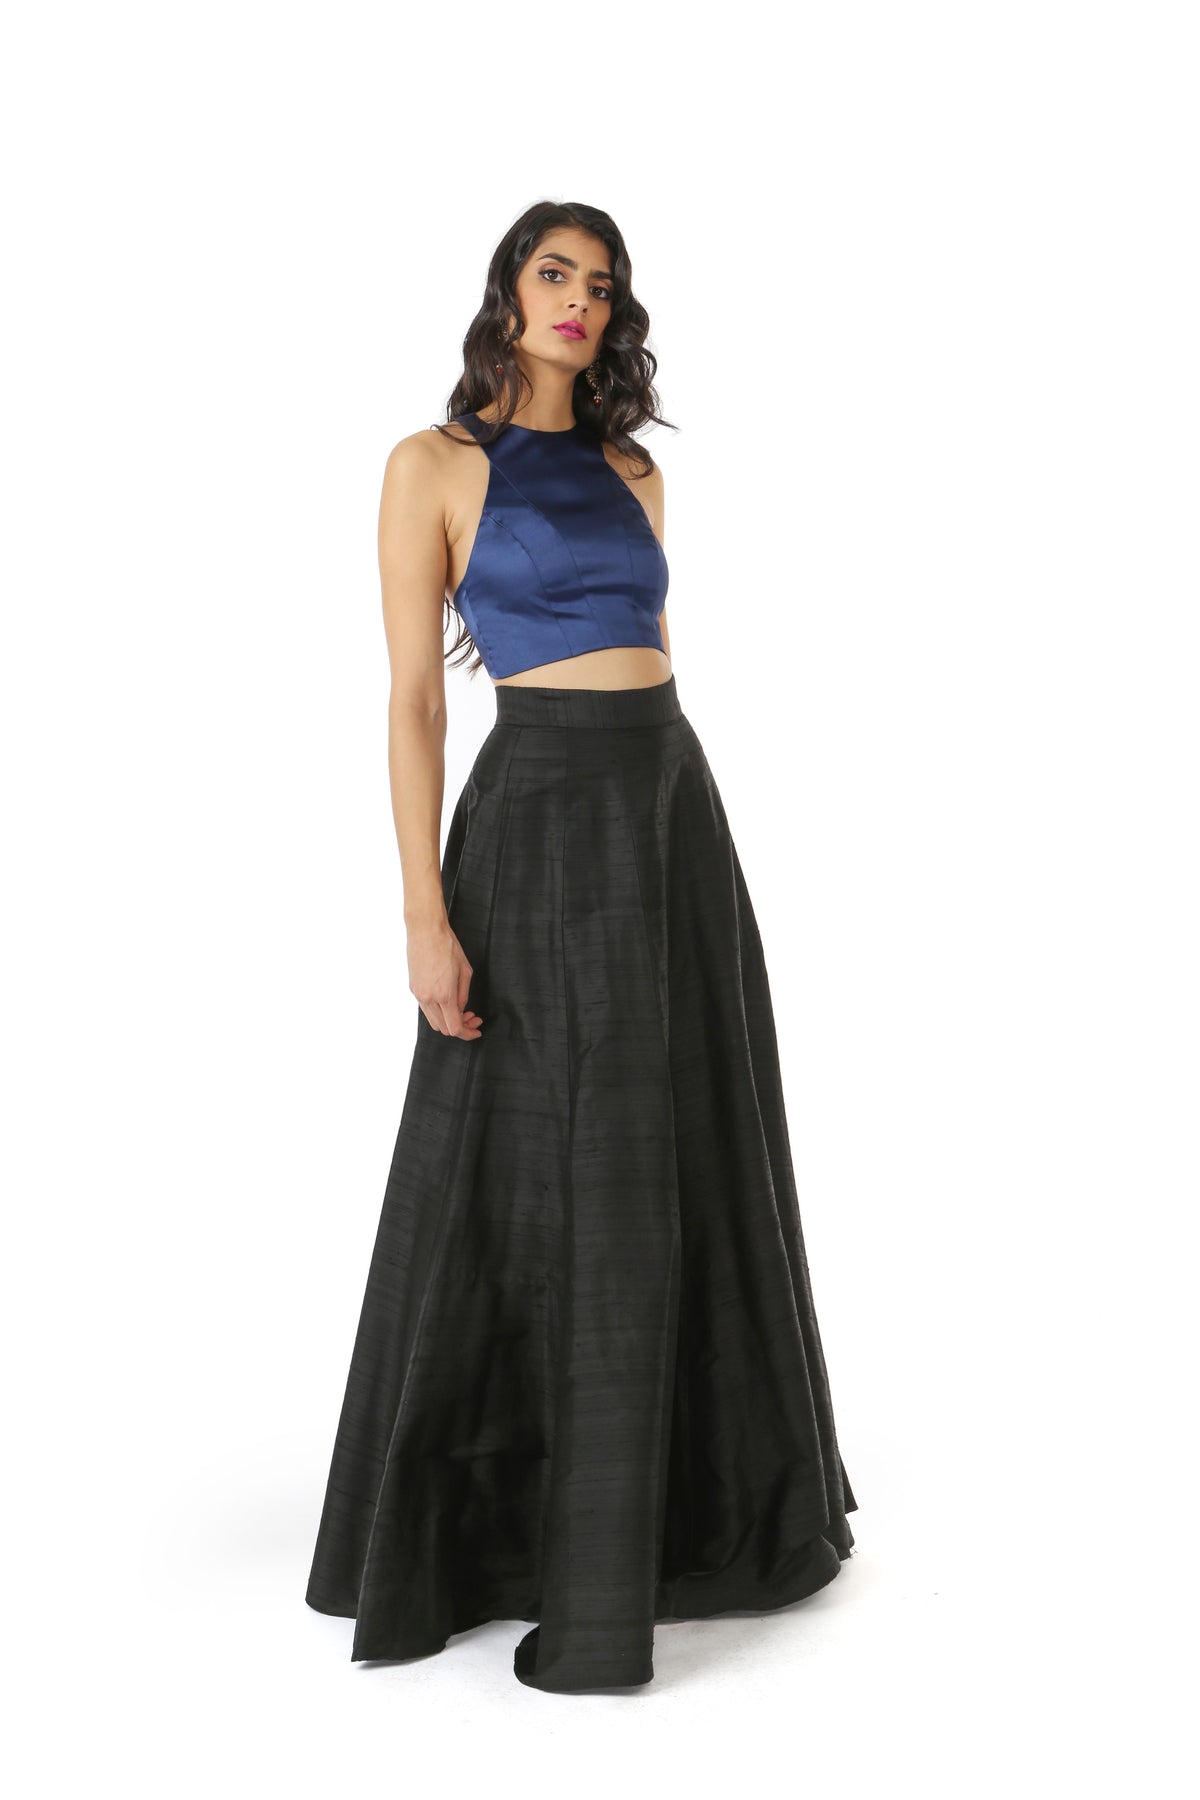 DIVYA Black Lehenga Silk Skirt - Front View - Harleen Kaur - Womenswear